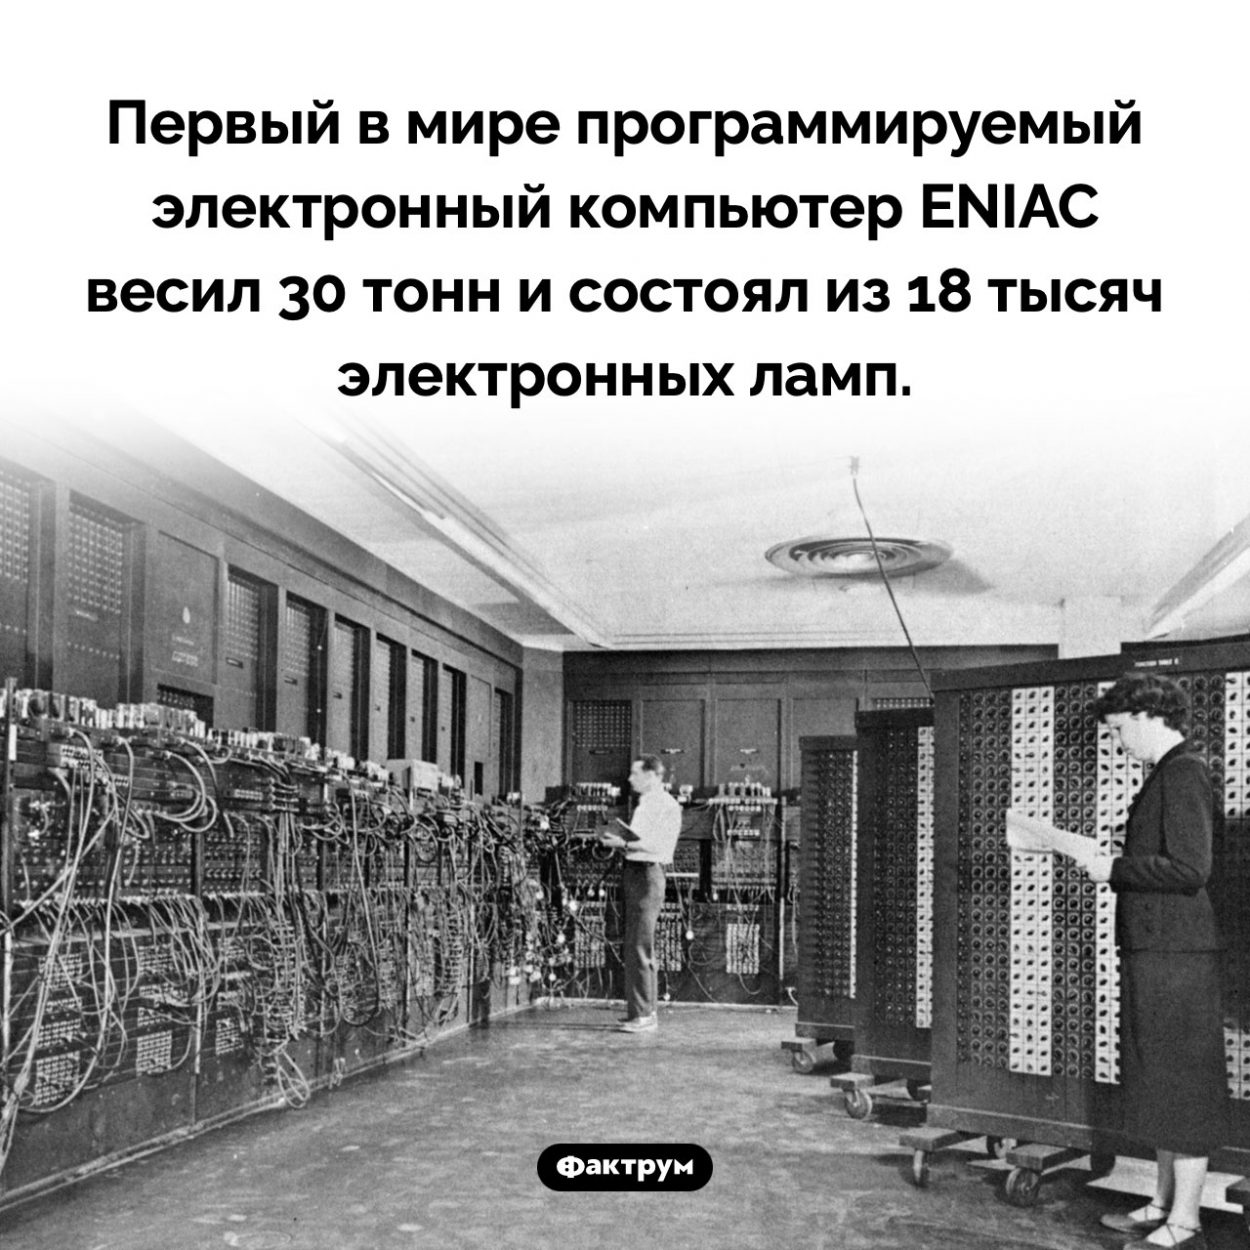 Первый в мире компьютер весил 30 тонн. Первый в мире программируемый электронный компьютер ENIAC весил 30 тонн и состоял из 18 тысяч электронных ламп.